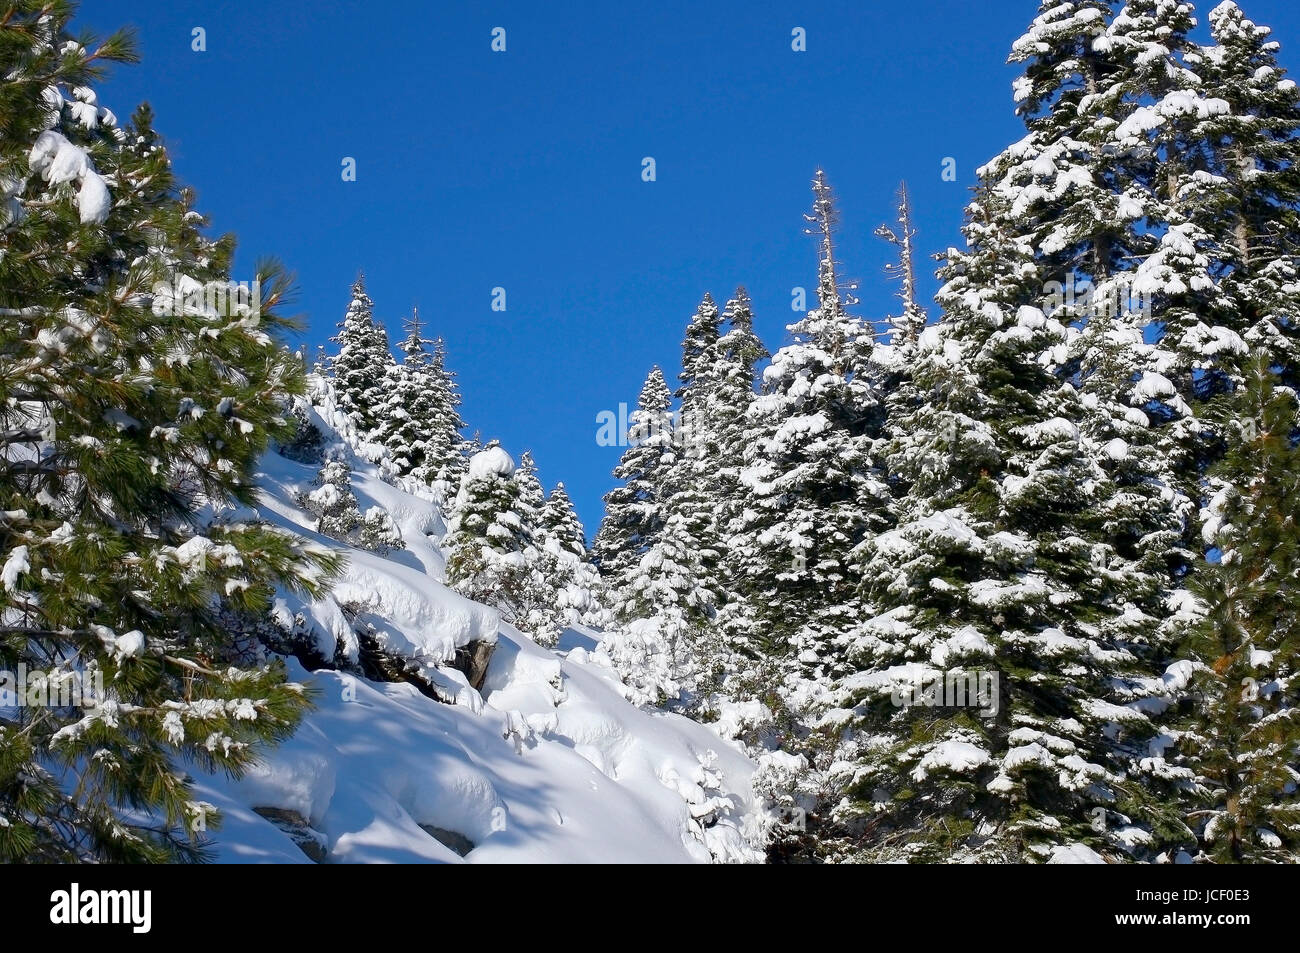 Dies ist ein Bild von einem Wald Umgebungen Lake Tahoe nach einem schweren Schneesturm in der Nähe von Emerald Bay. Stockfoto